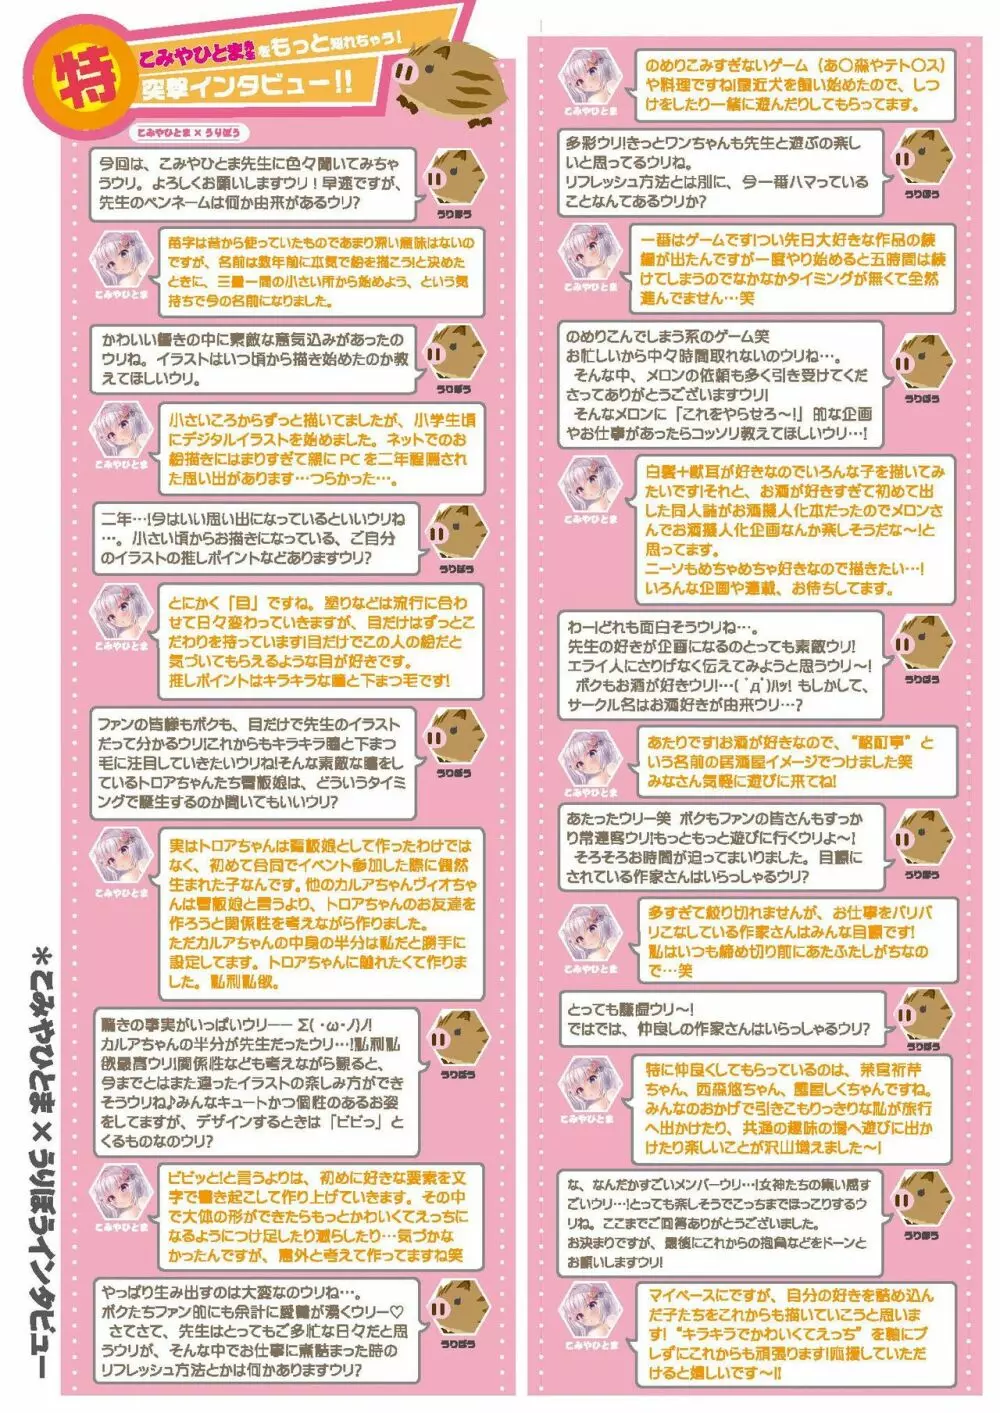 月刊うりぼうざっか店 2020年9月4日発行号 5ページ